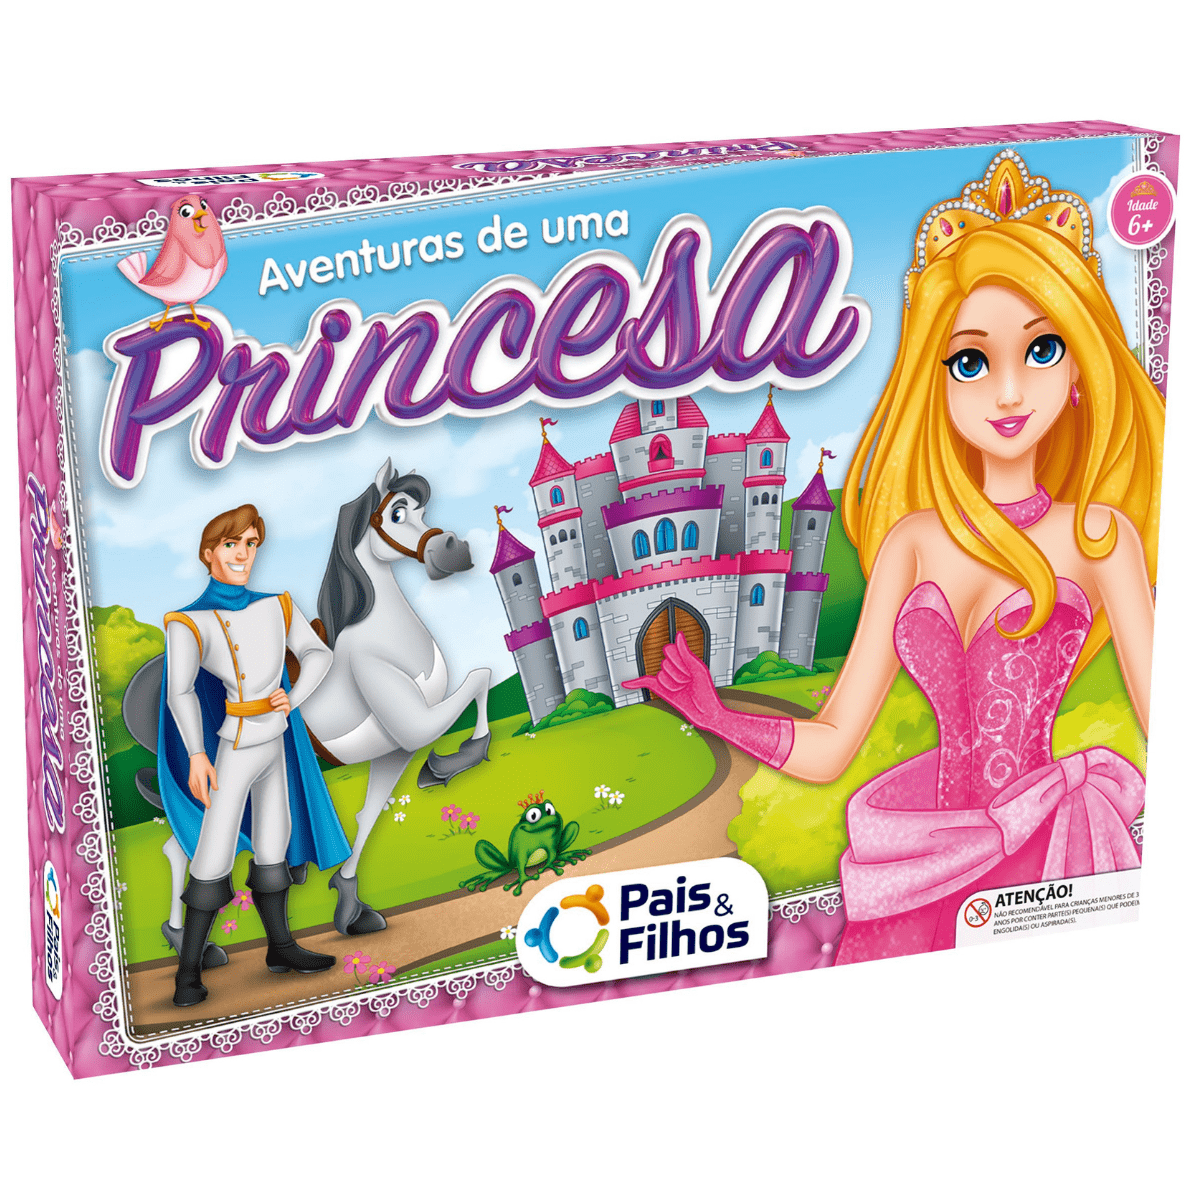 Jogue Concurso de Beleza da Princesa, um jogo de Princesas